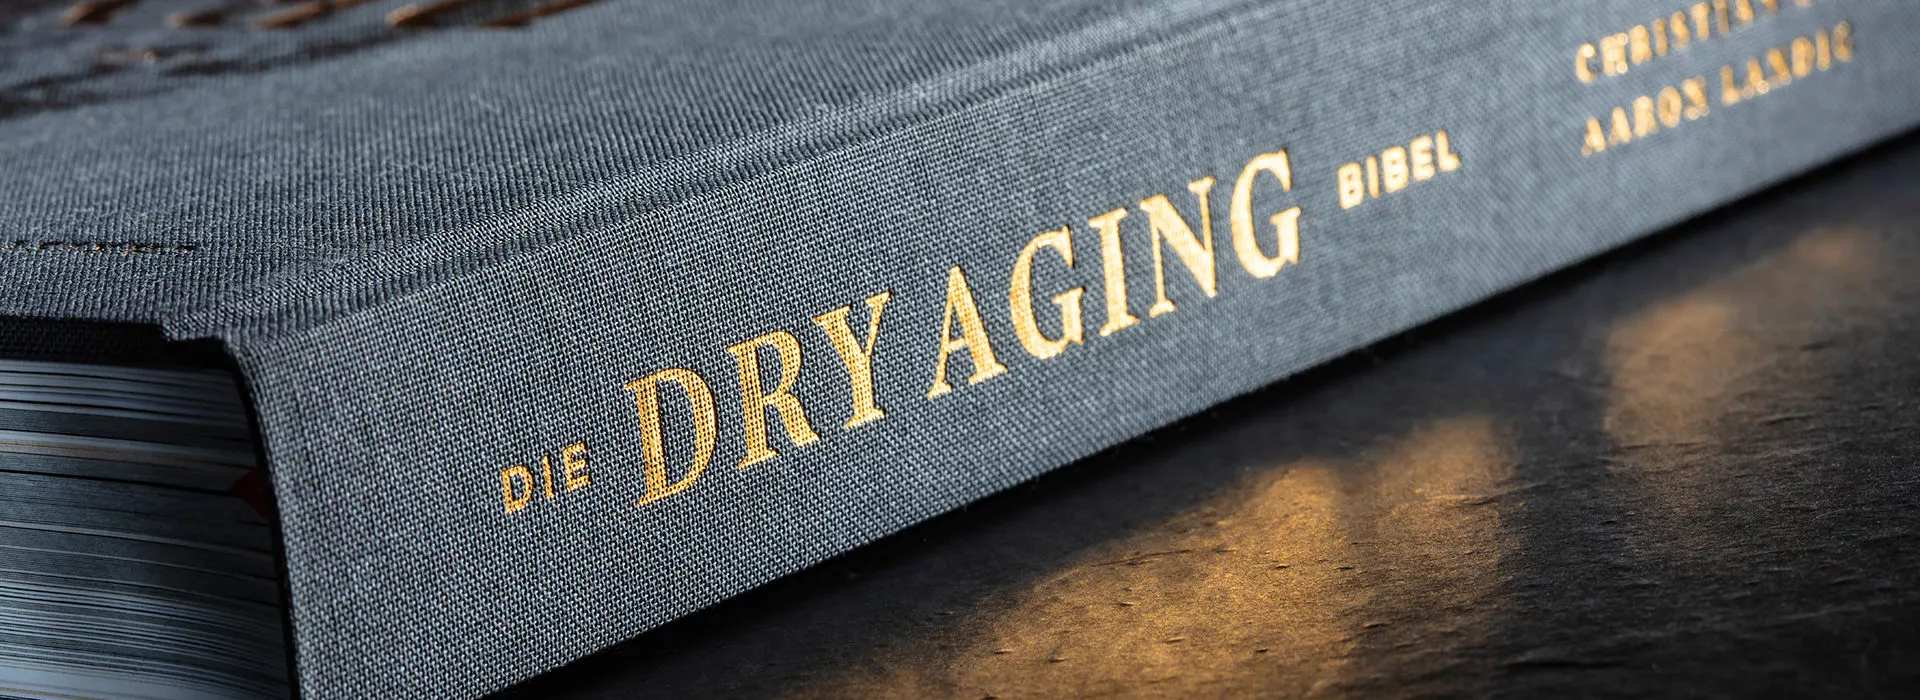 DryAger-SmartAging-Slider-Buch-1920x700-01-1920x700